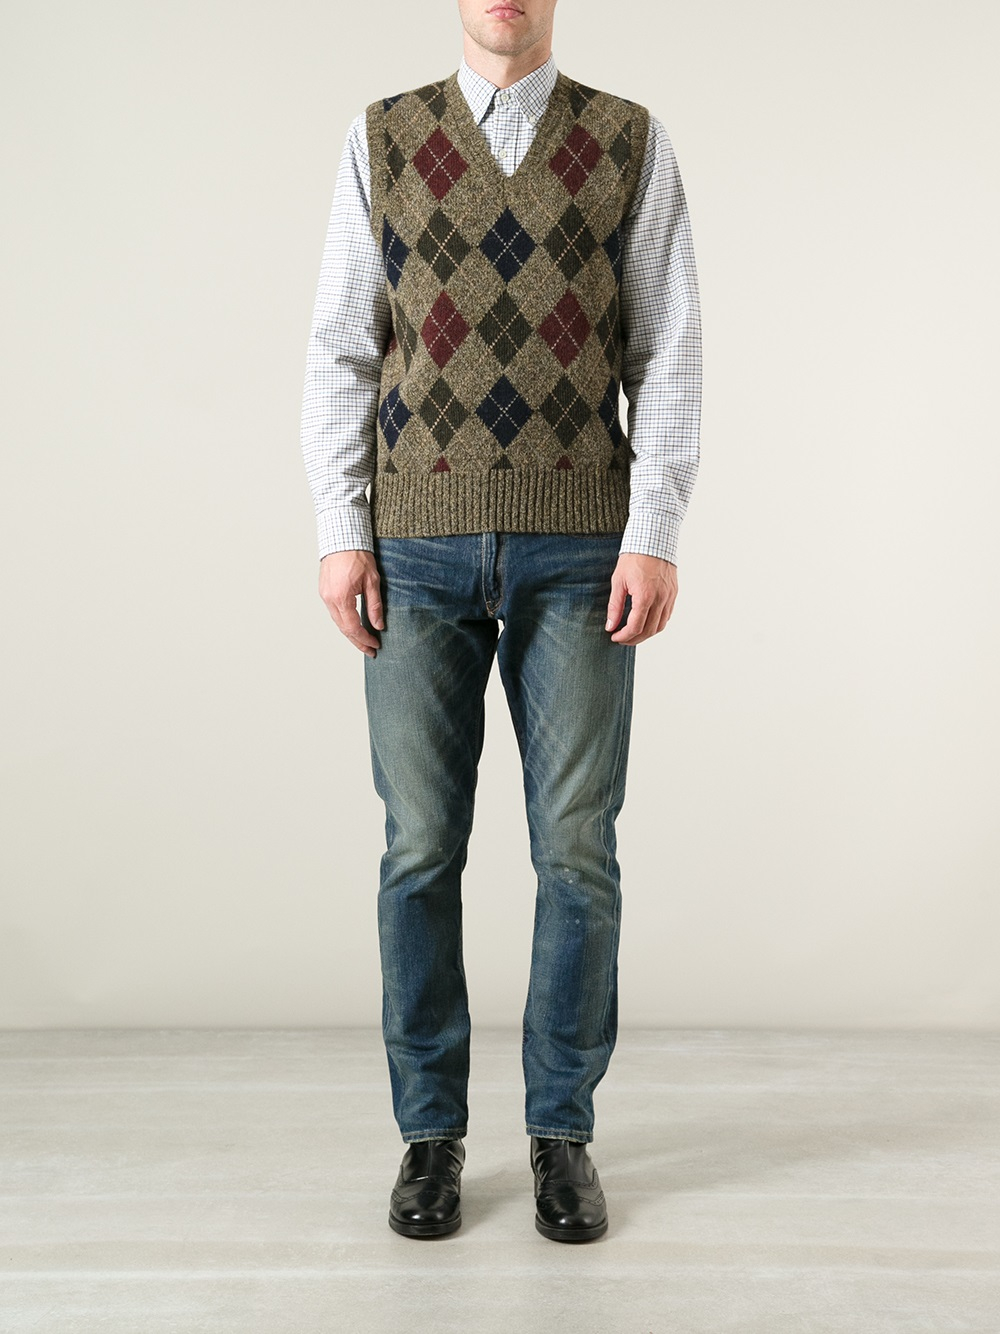 Lyst - Polo Ralph Lauren Harlequin Sweater Vest in Brown for Men